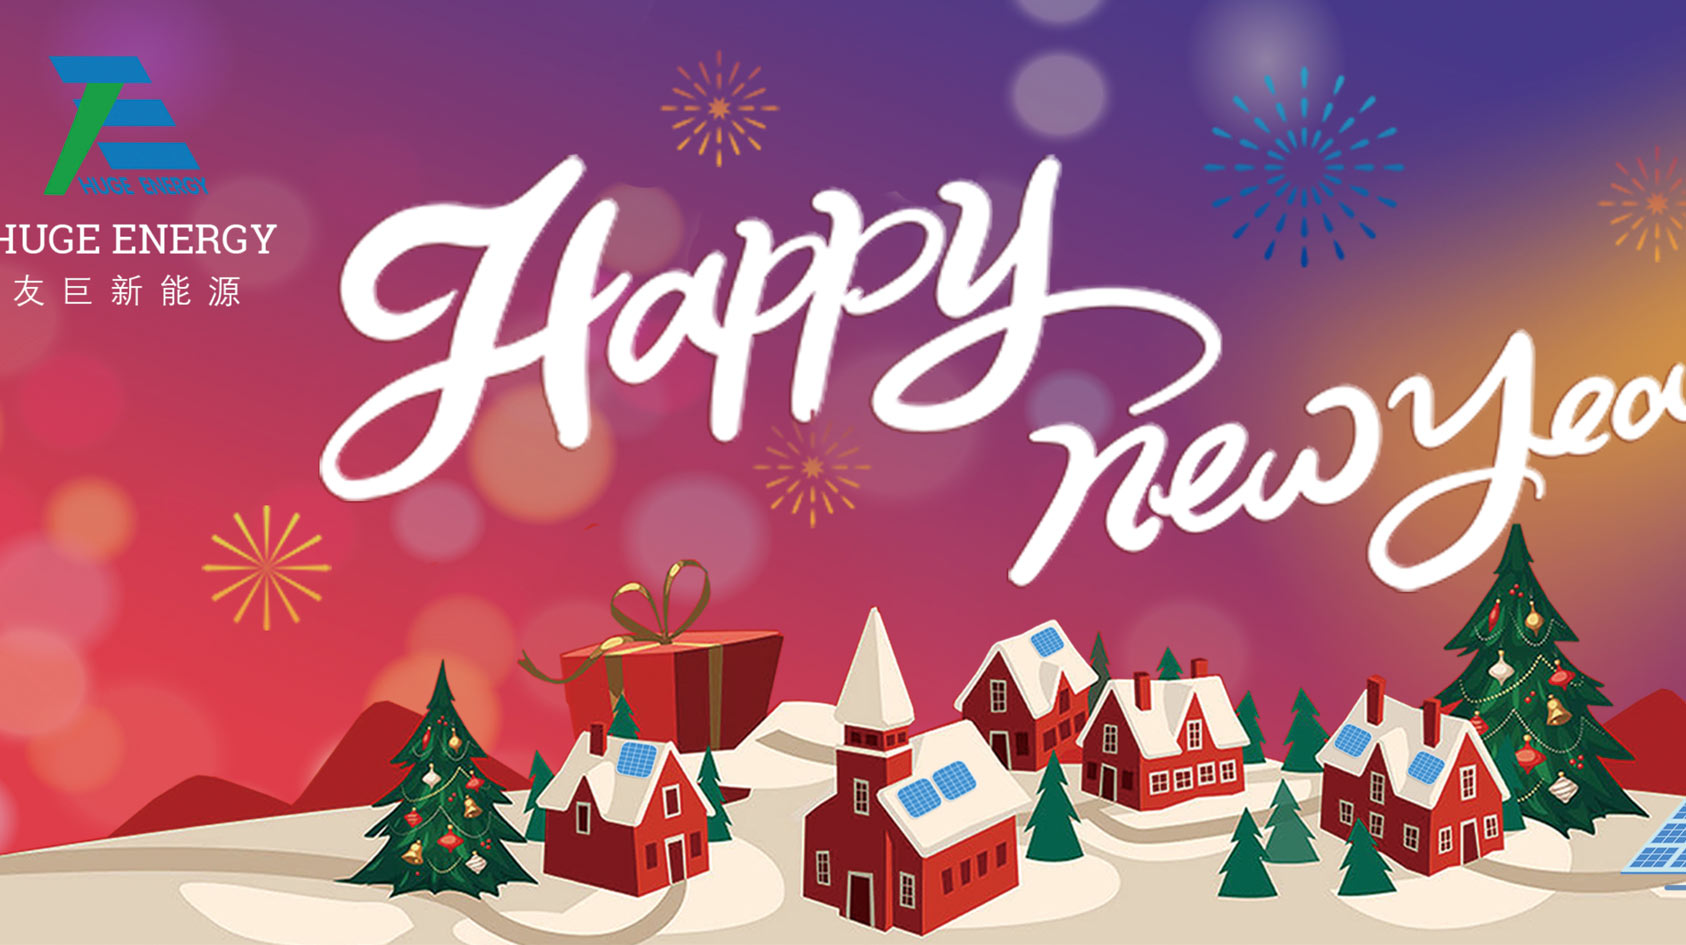 ในช่วงต้นปีใหม่ Huge Energy ขอให้คุณมีความสุขในปีใหม่!